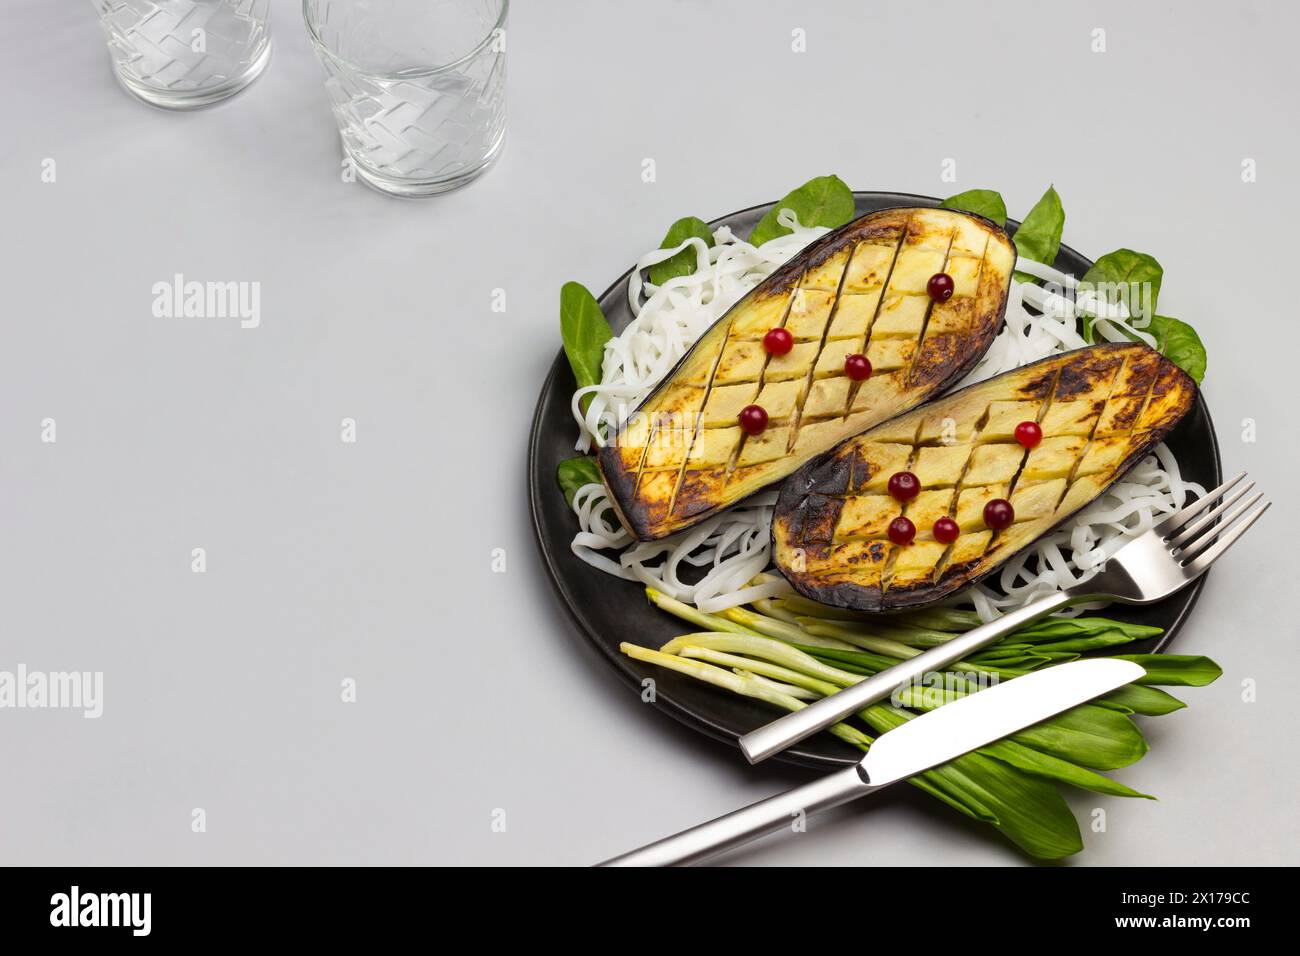 Gebackene Auberginen mit Gemüse und Reisnudeln auf schwarzer Platte. Gabel und Messer. Soße in einer Glasschale. Draufsicht Stockfoto